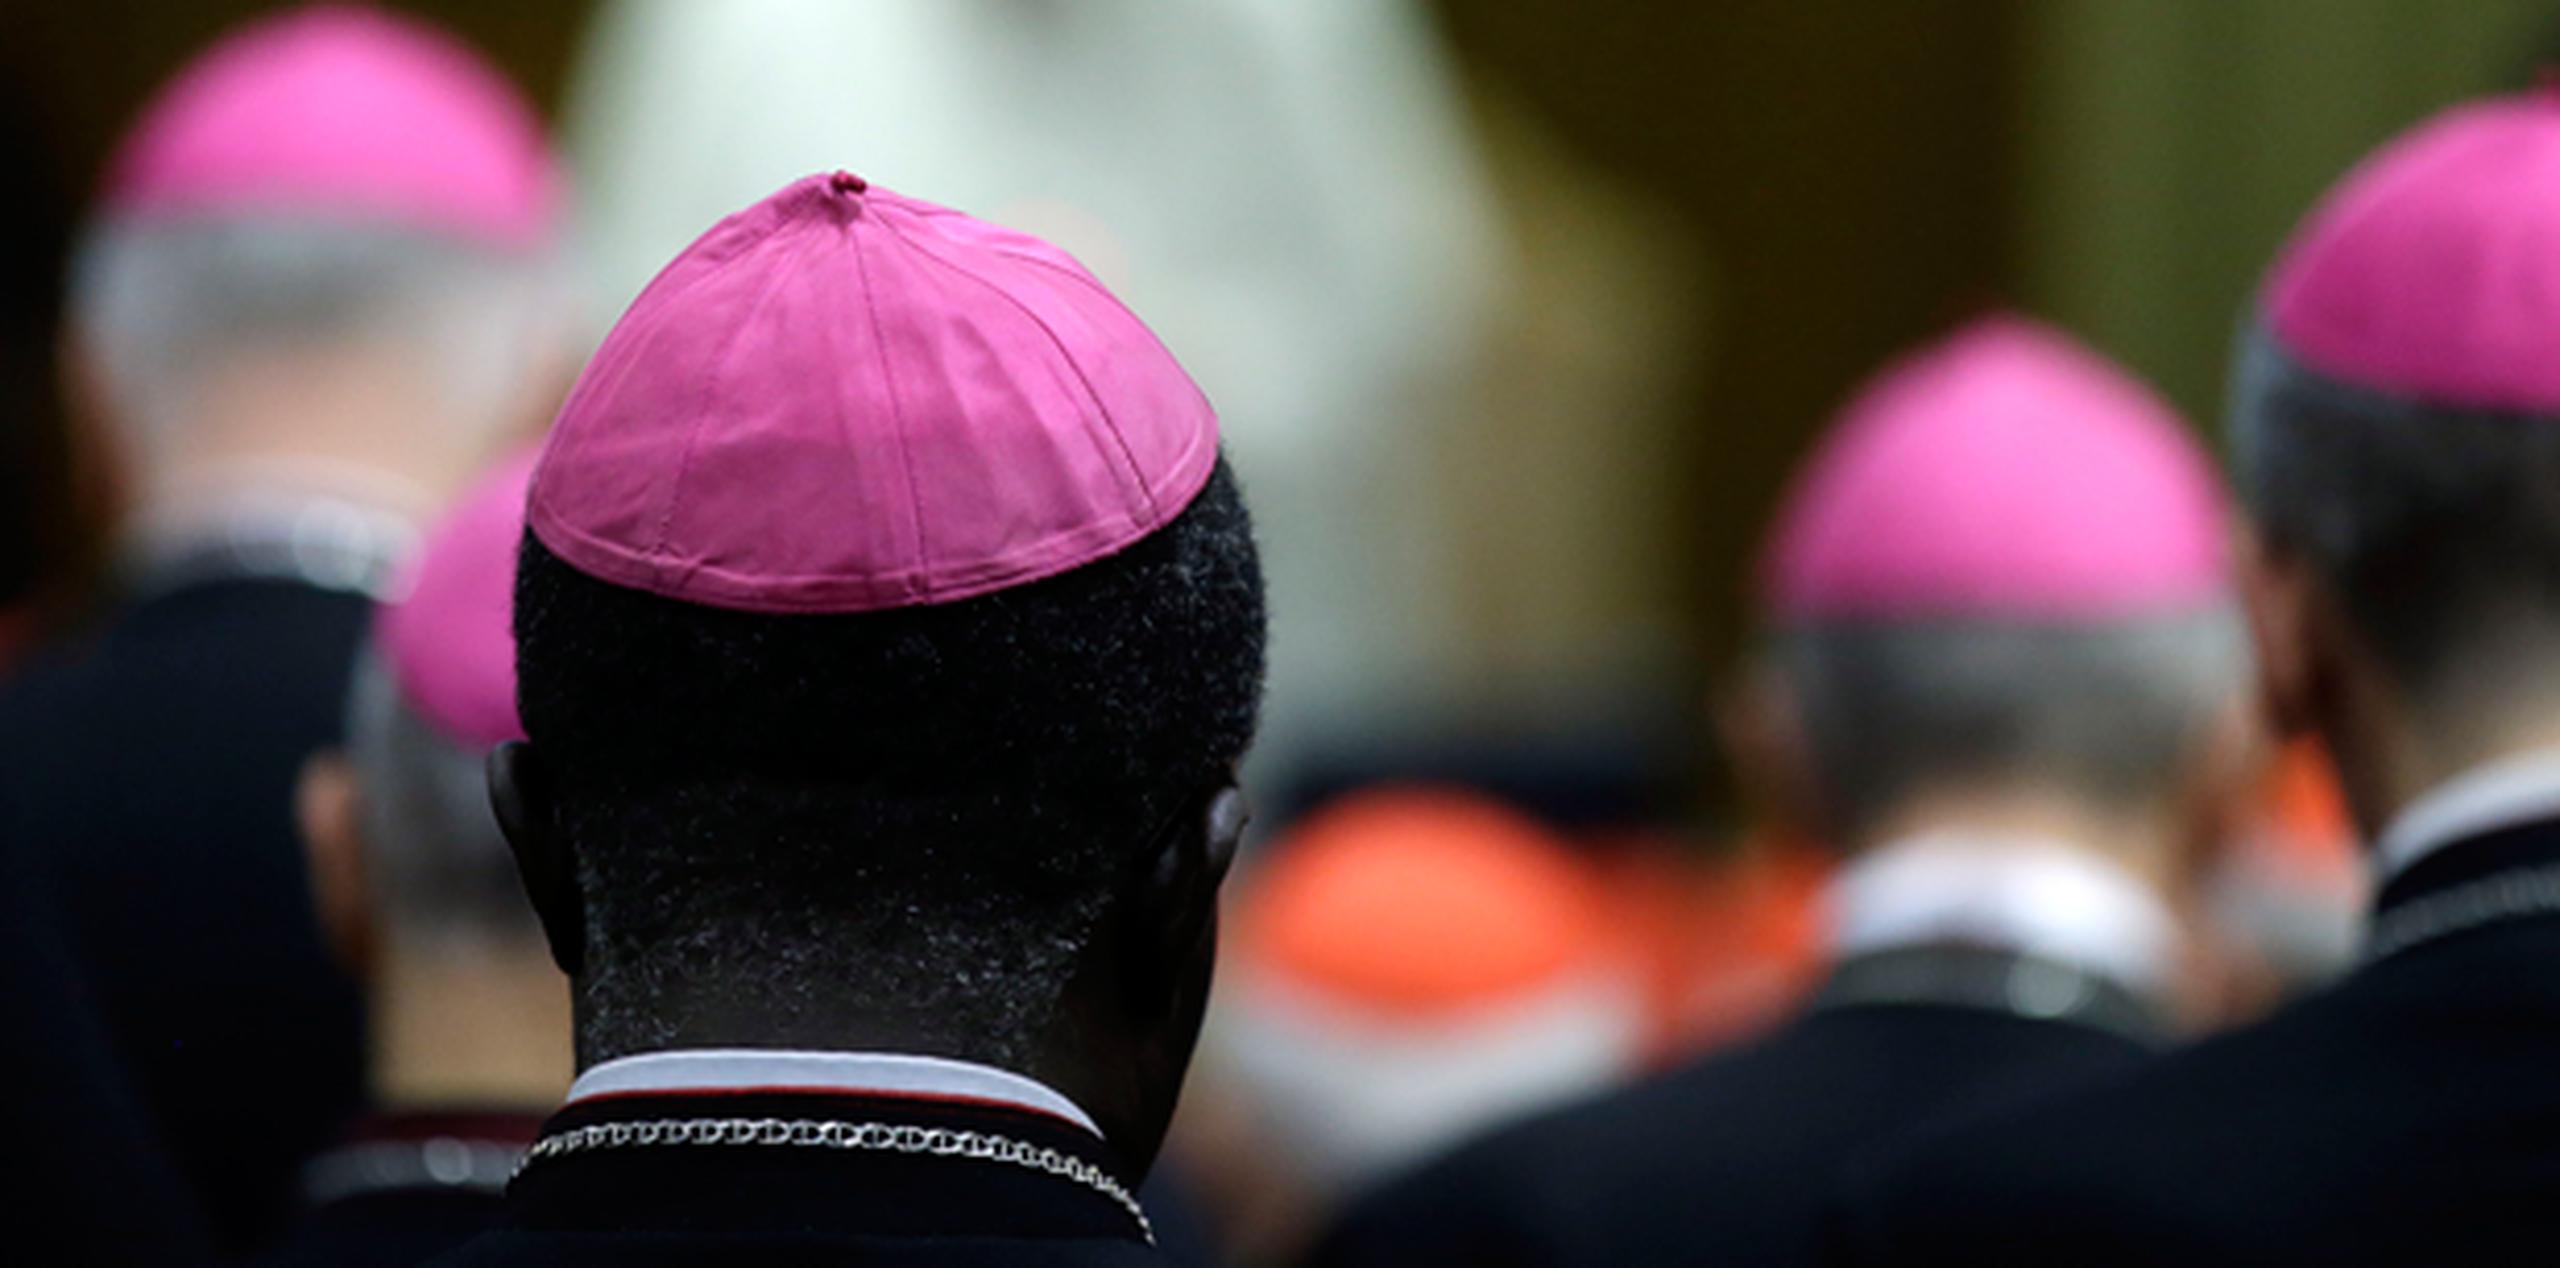 Un documento difundido al promediar el sínodo de dos semanas fue elogiado por grupos defensores de los derechos humanos como un cambio radical de tono hacia la aceptación de los homosexuales. (AP)